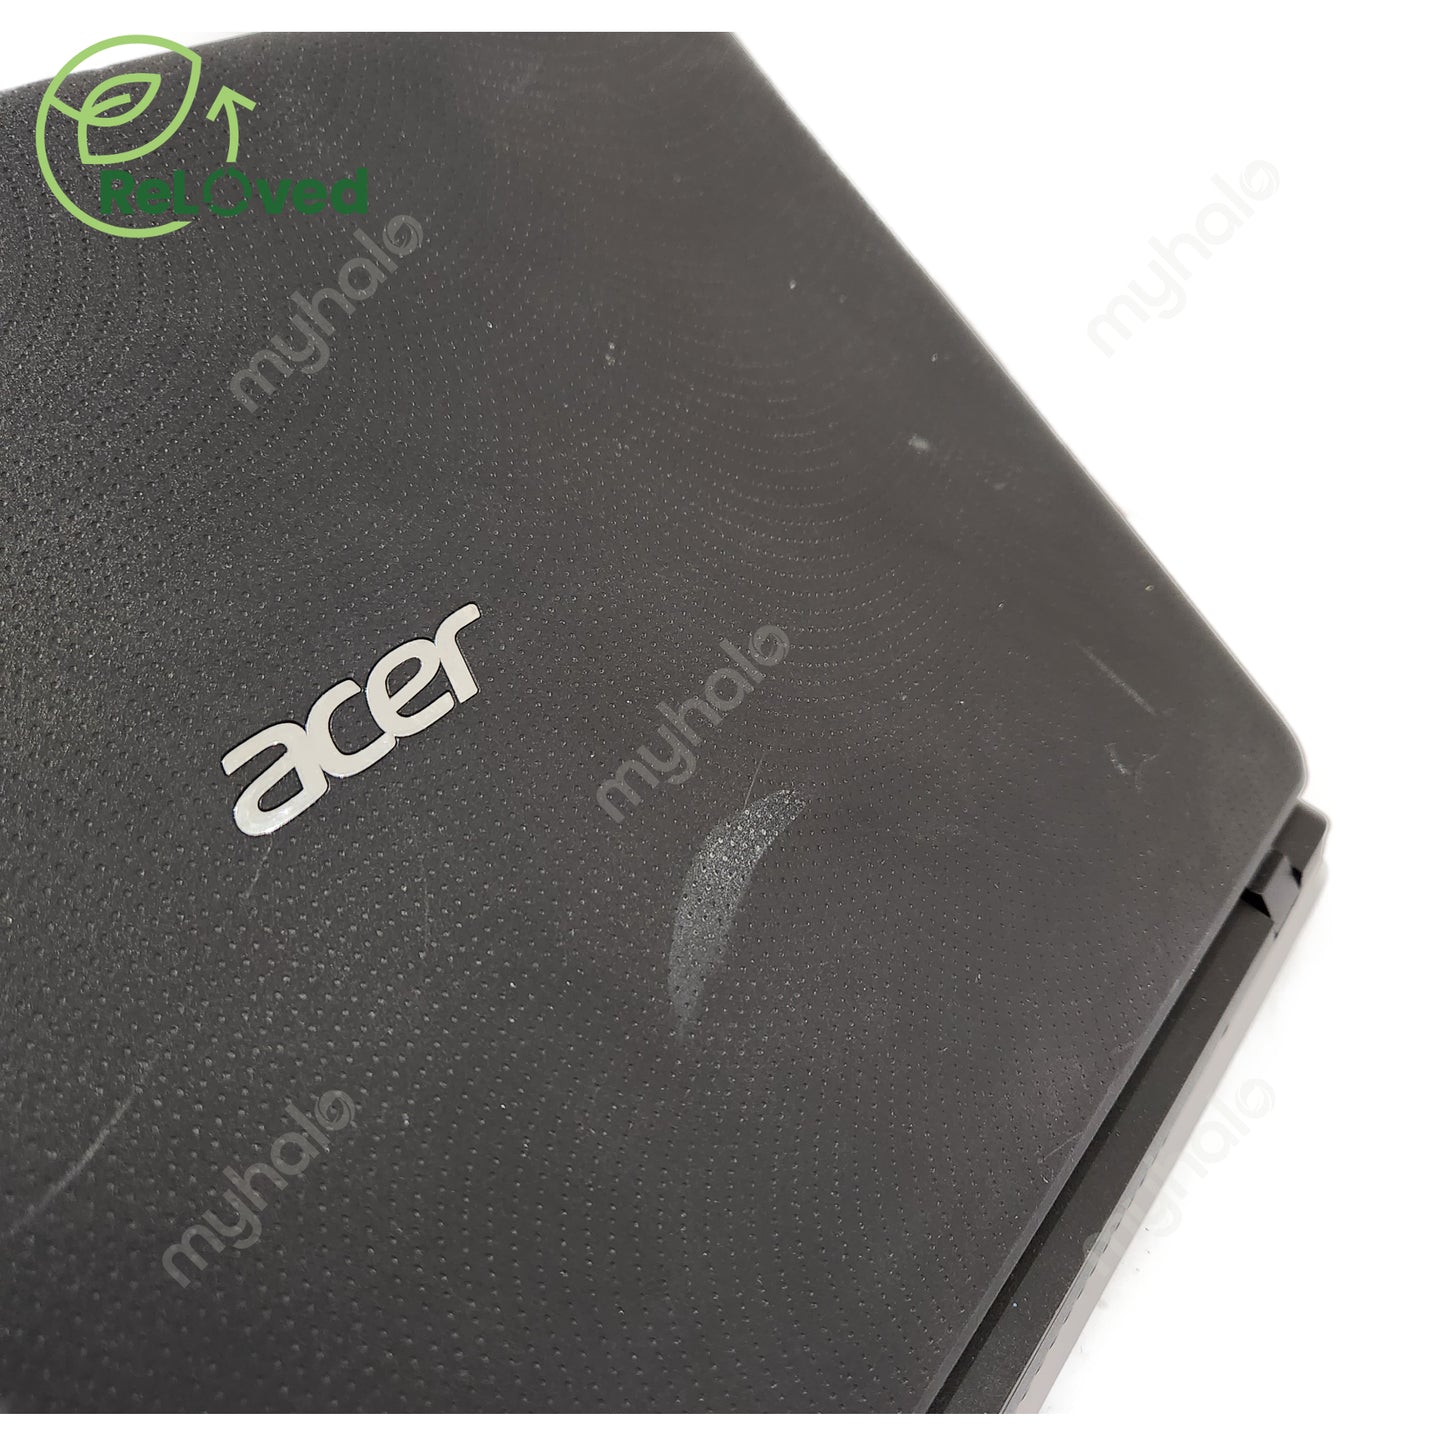 ACER Aspire ES1 (I5-7/4GB/256GB/920M)